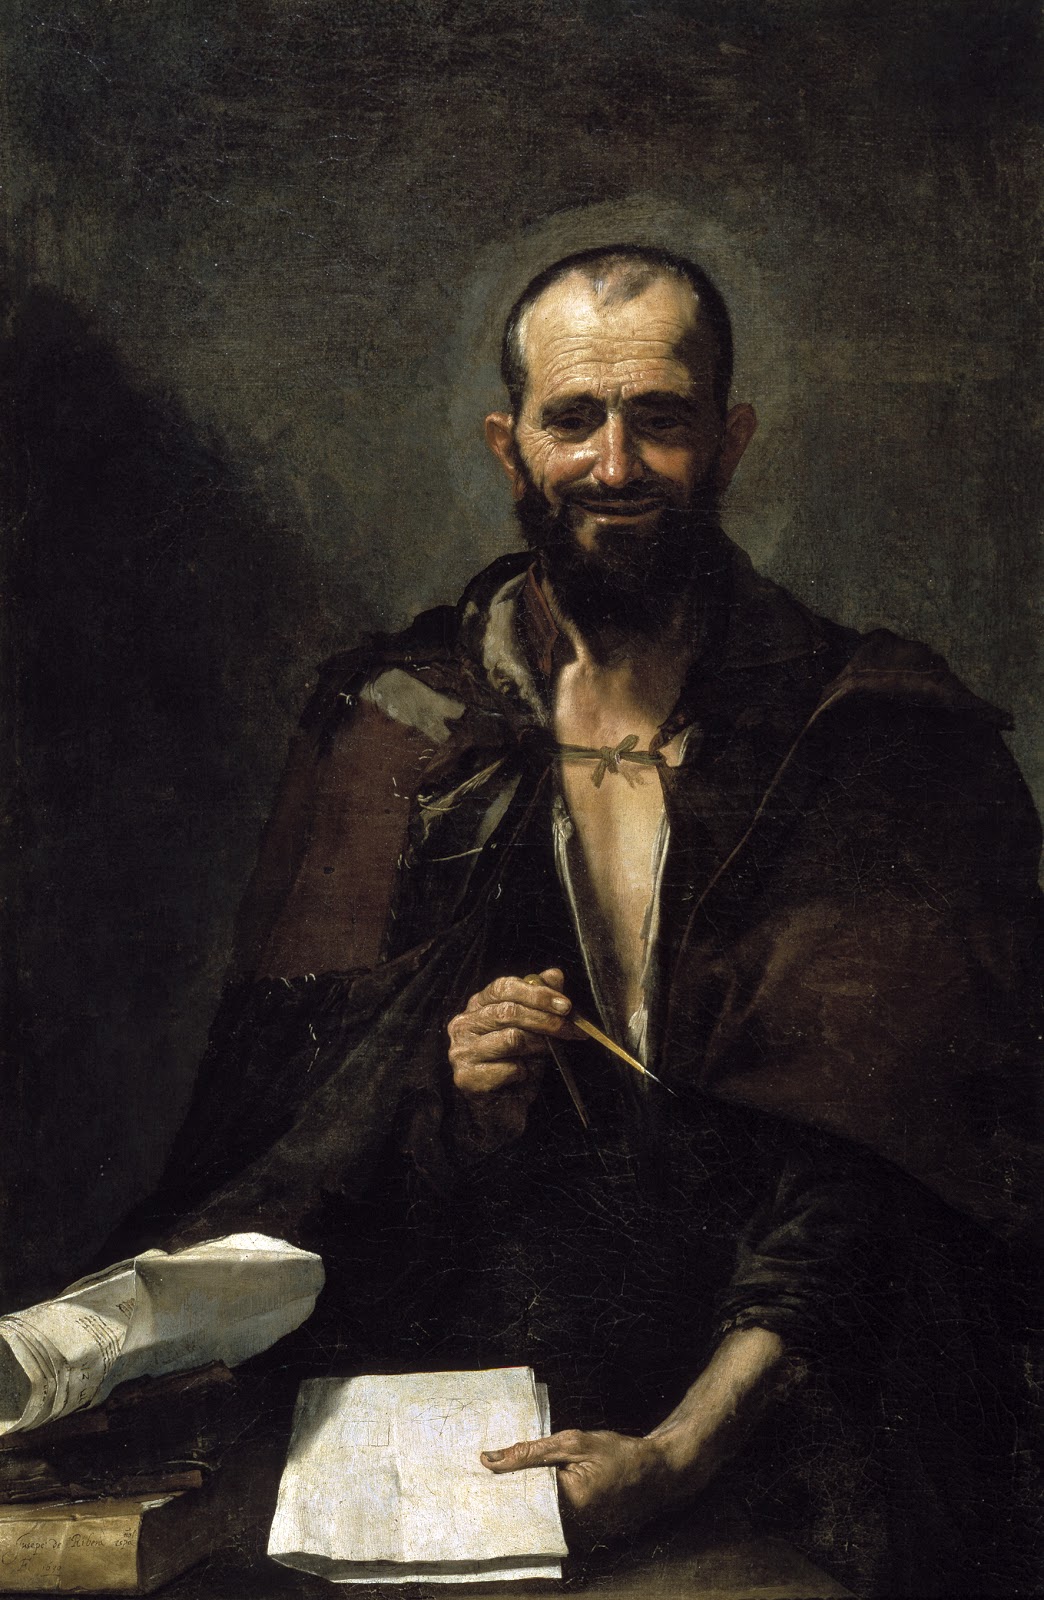 Jusepe+de+Ribera-1591-1652 (17).jpg